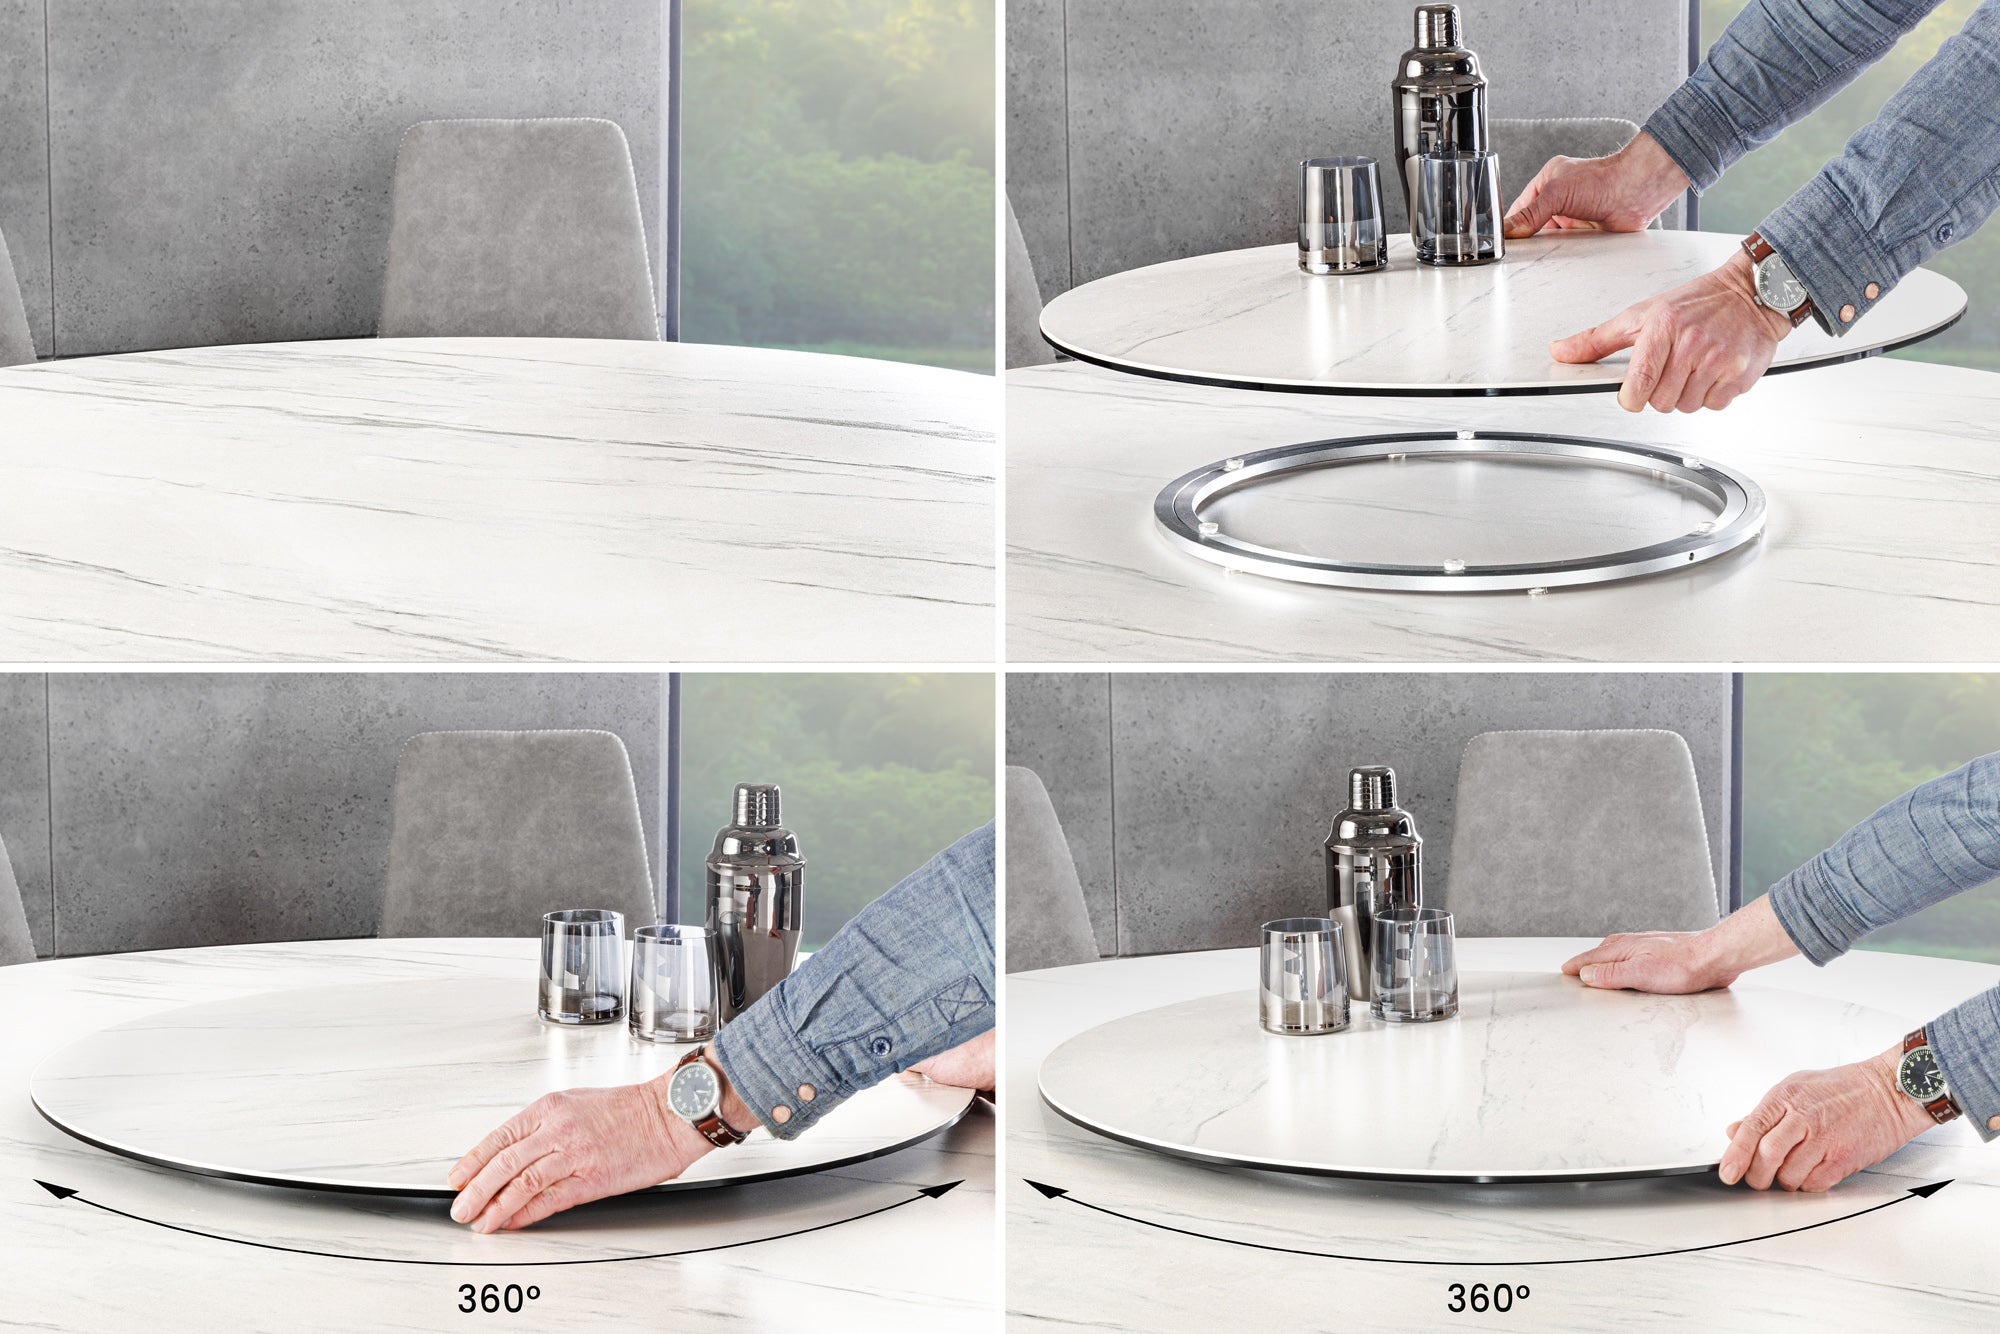 Dining Table Orbit Round 150cm Ceramic White